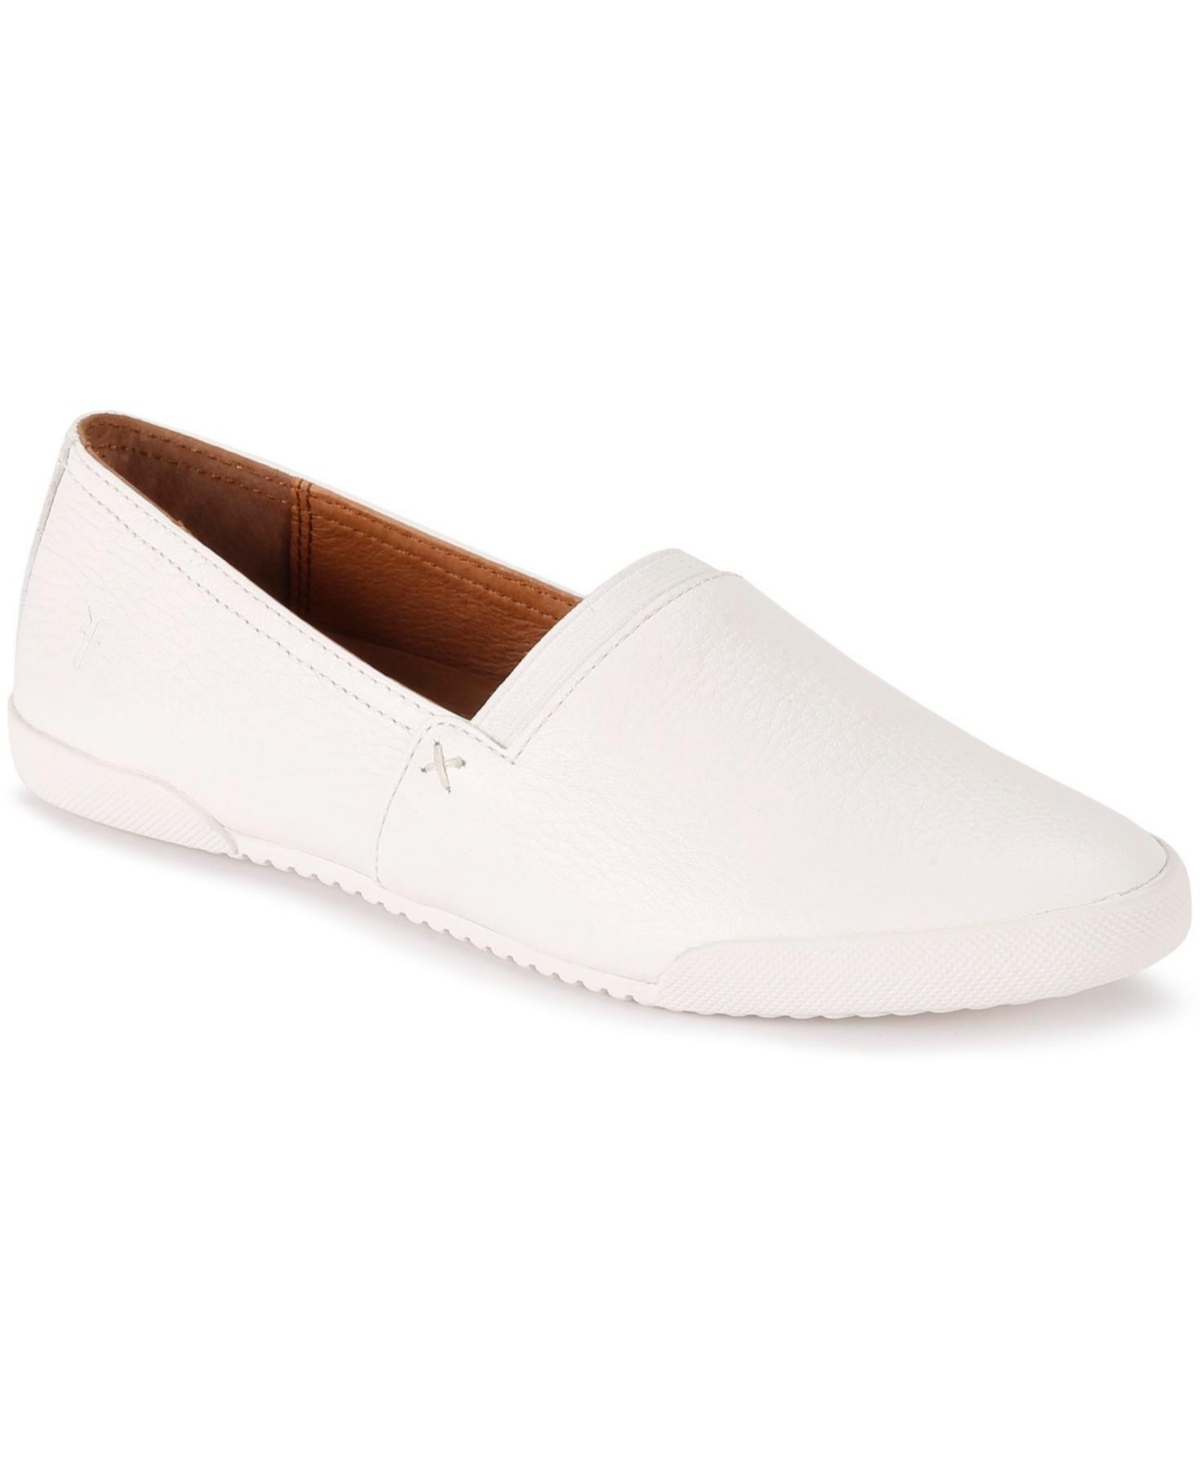 Shop Frye Women's Melanie Casual Slip On Sneakers In White Leather